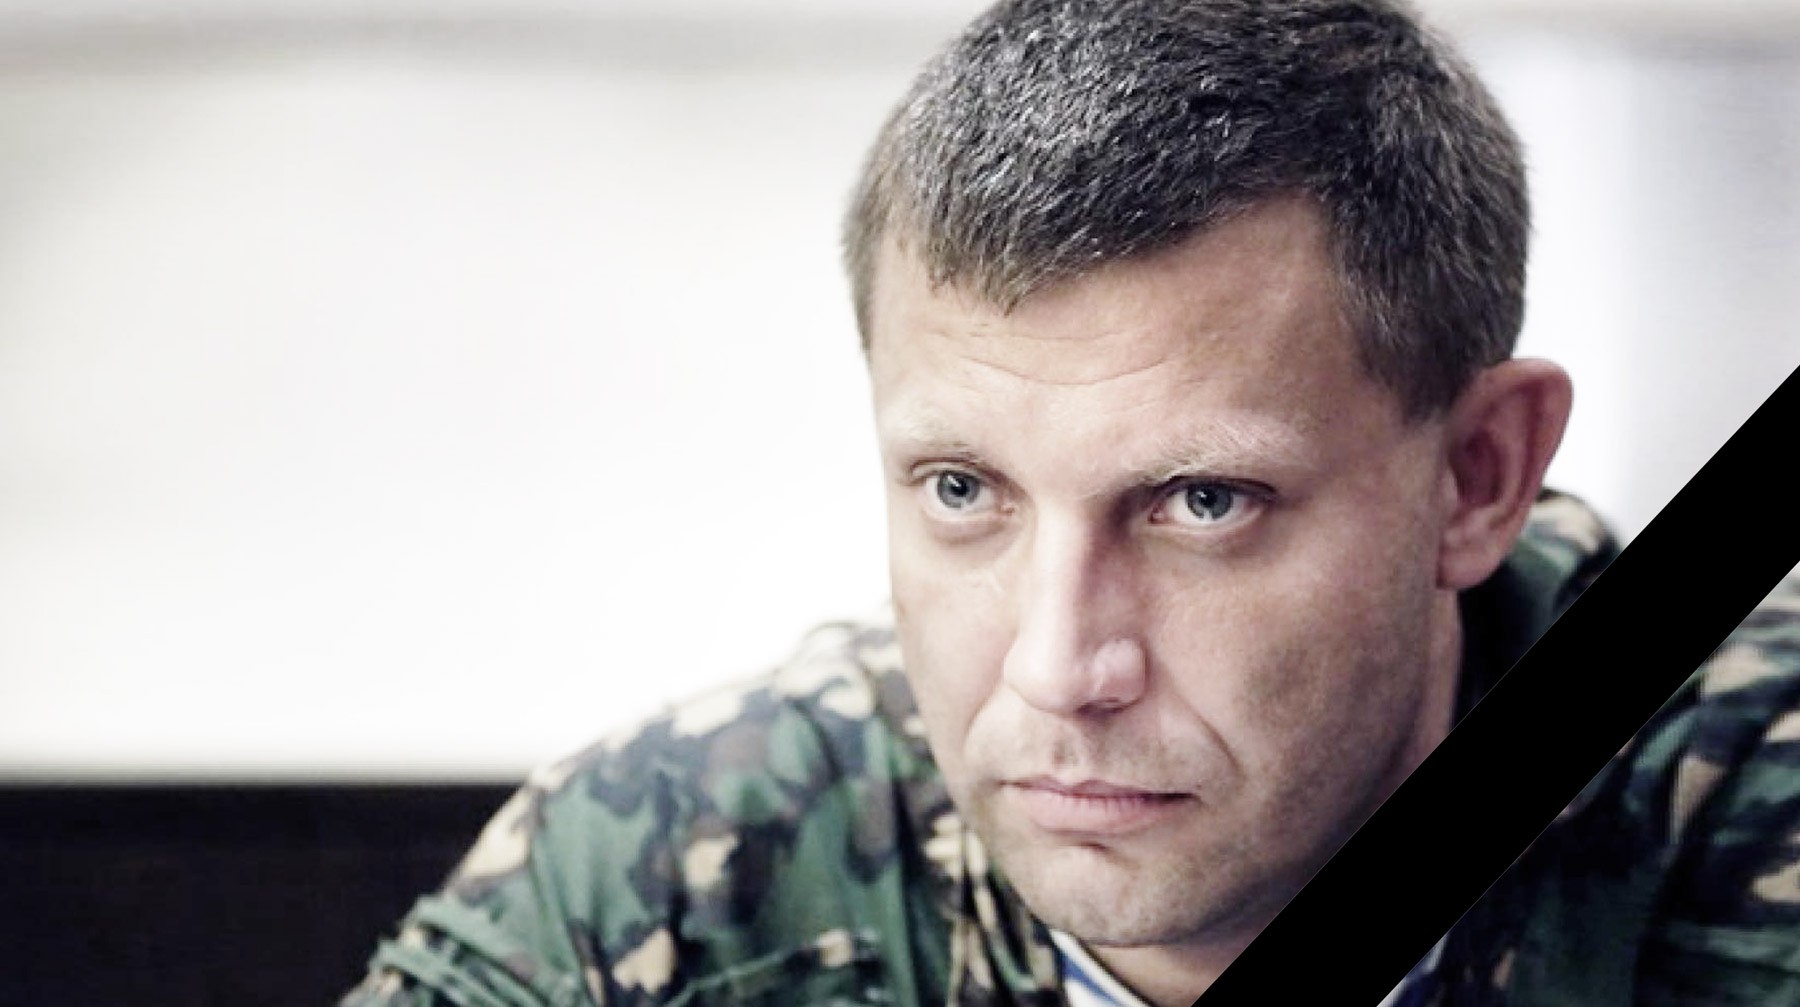 Dailystorm - Cотрудники ФСБ отправились в Донбасс расследовать убийство Захарченко